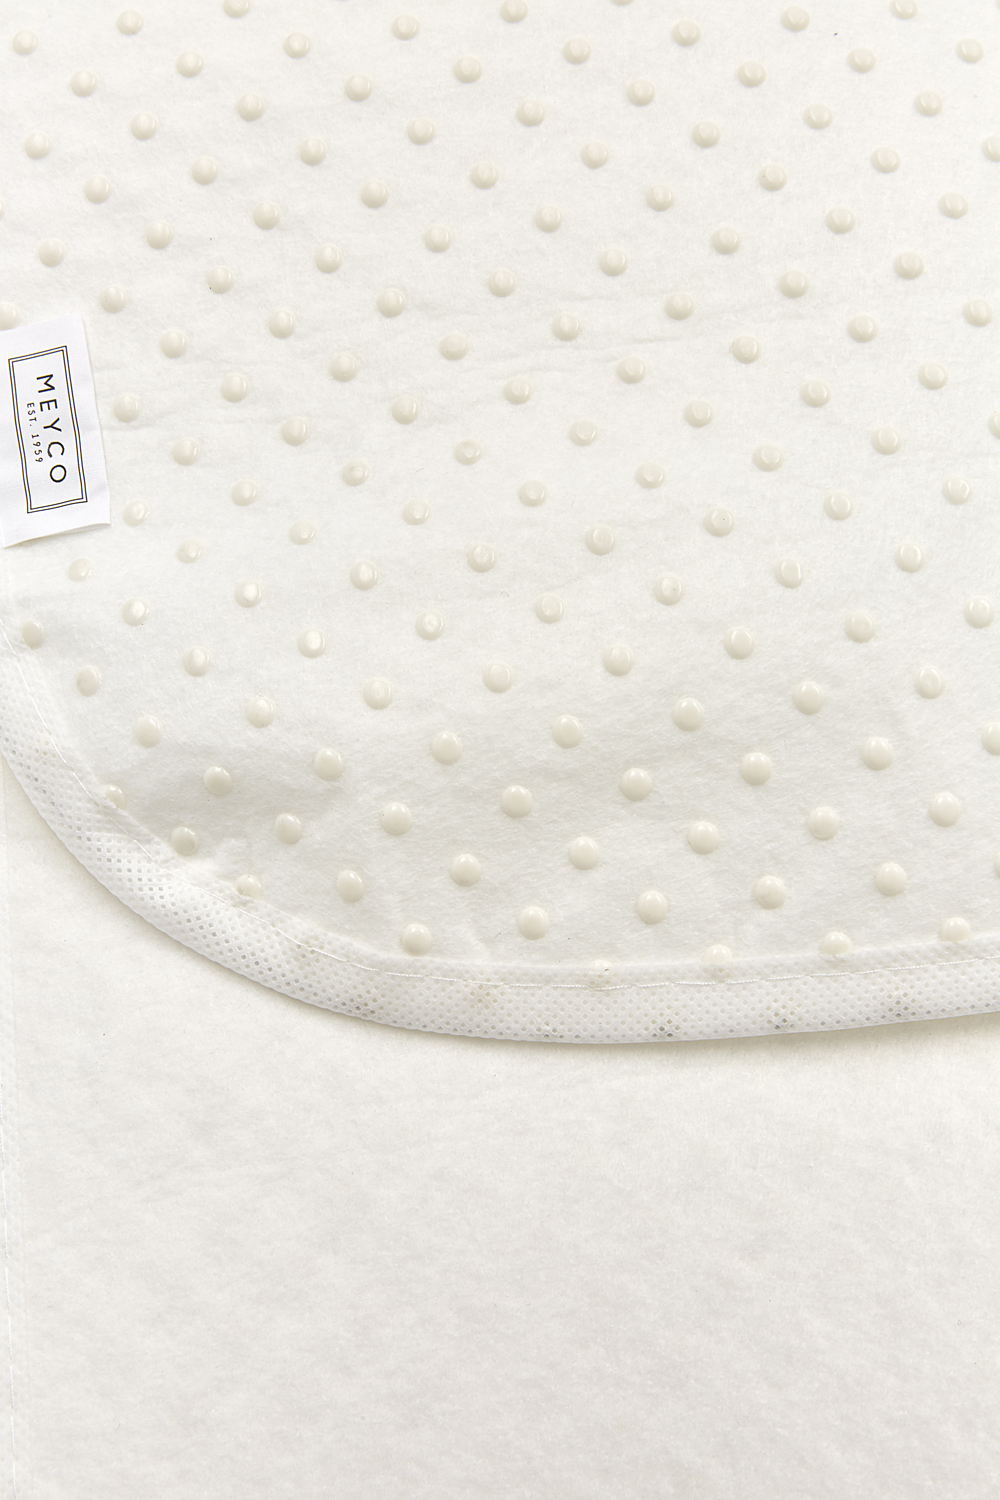 Non-slip mattress pad cot bed - white - 60x120cm